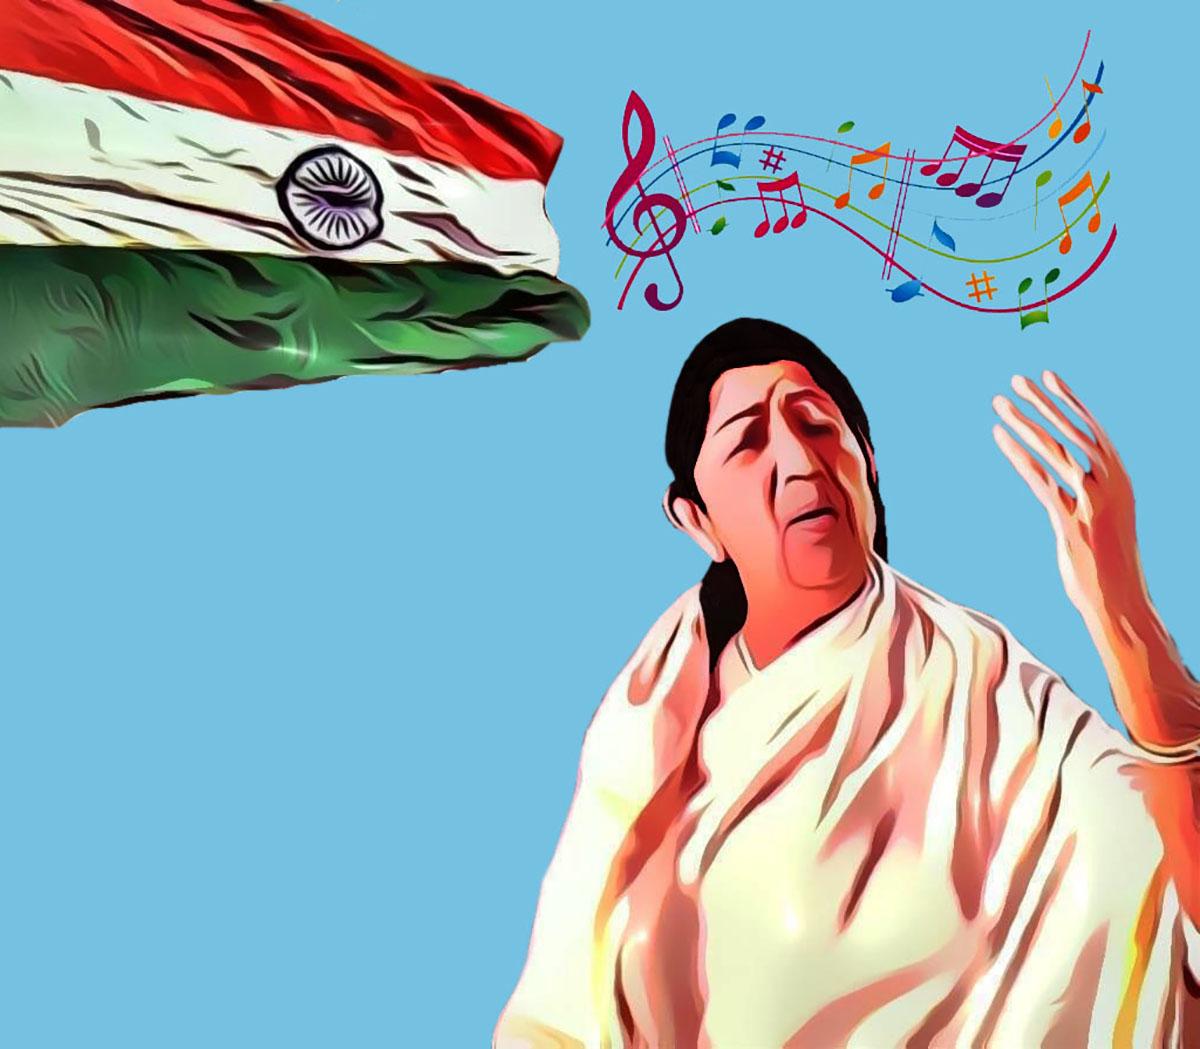 Lata Mangeshkar and the Music Revolution